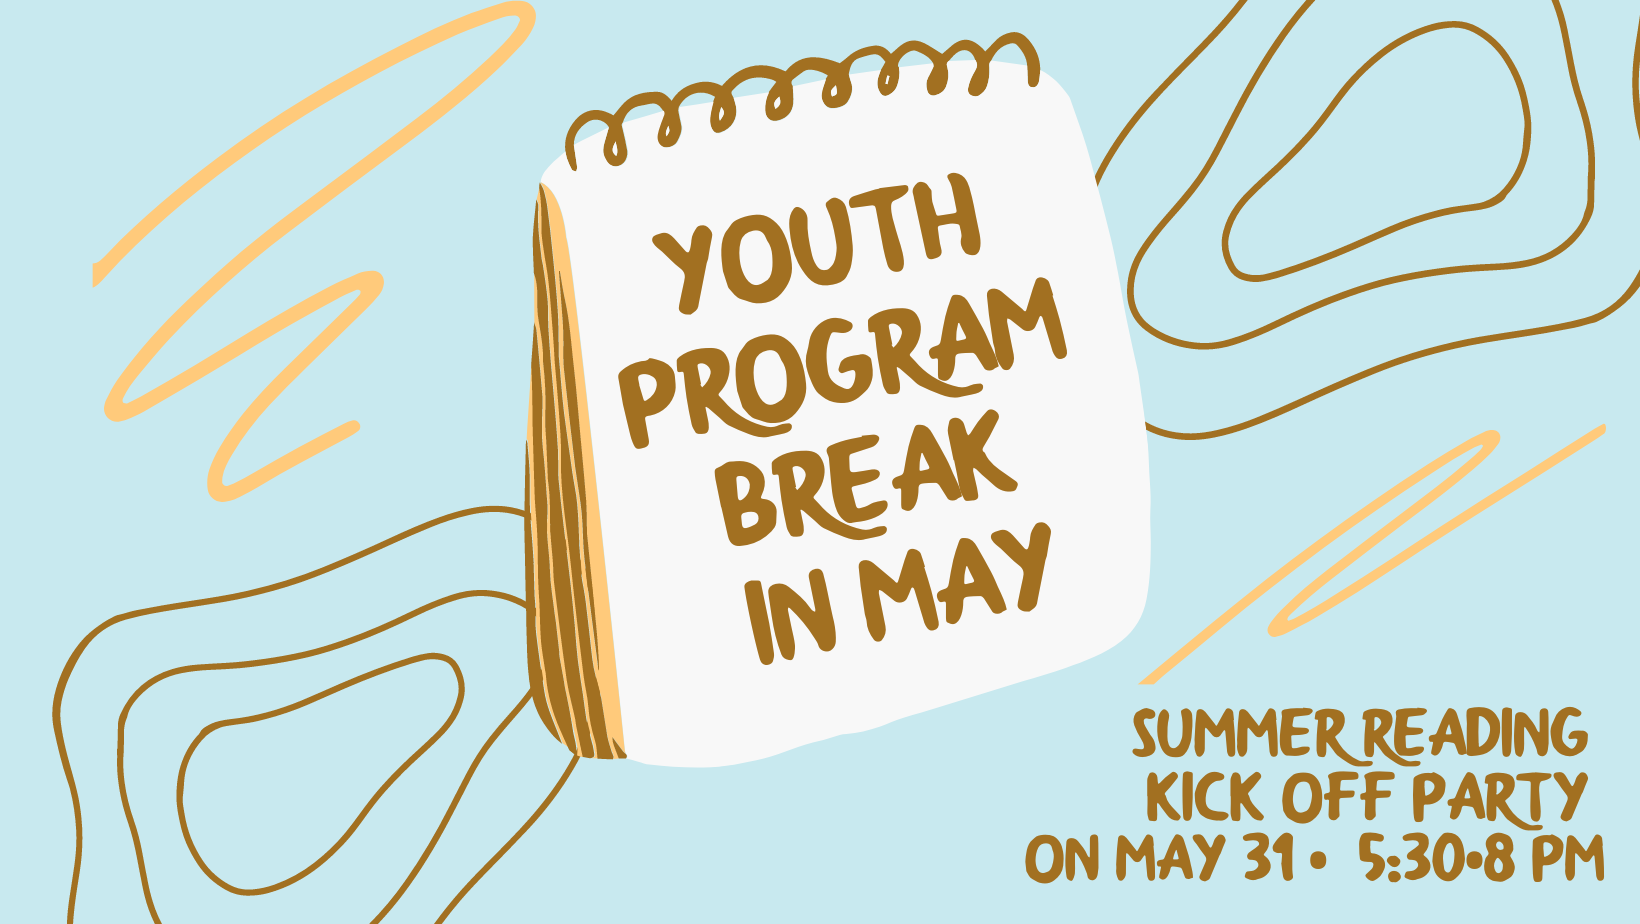 Youth Program break in May